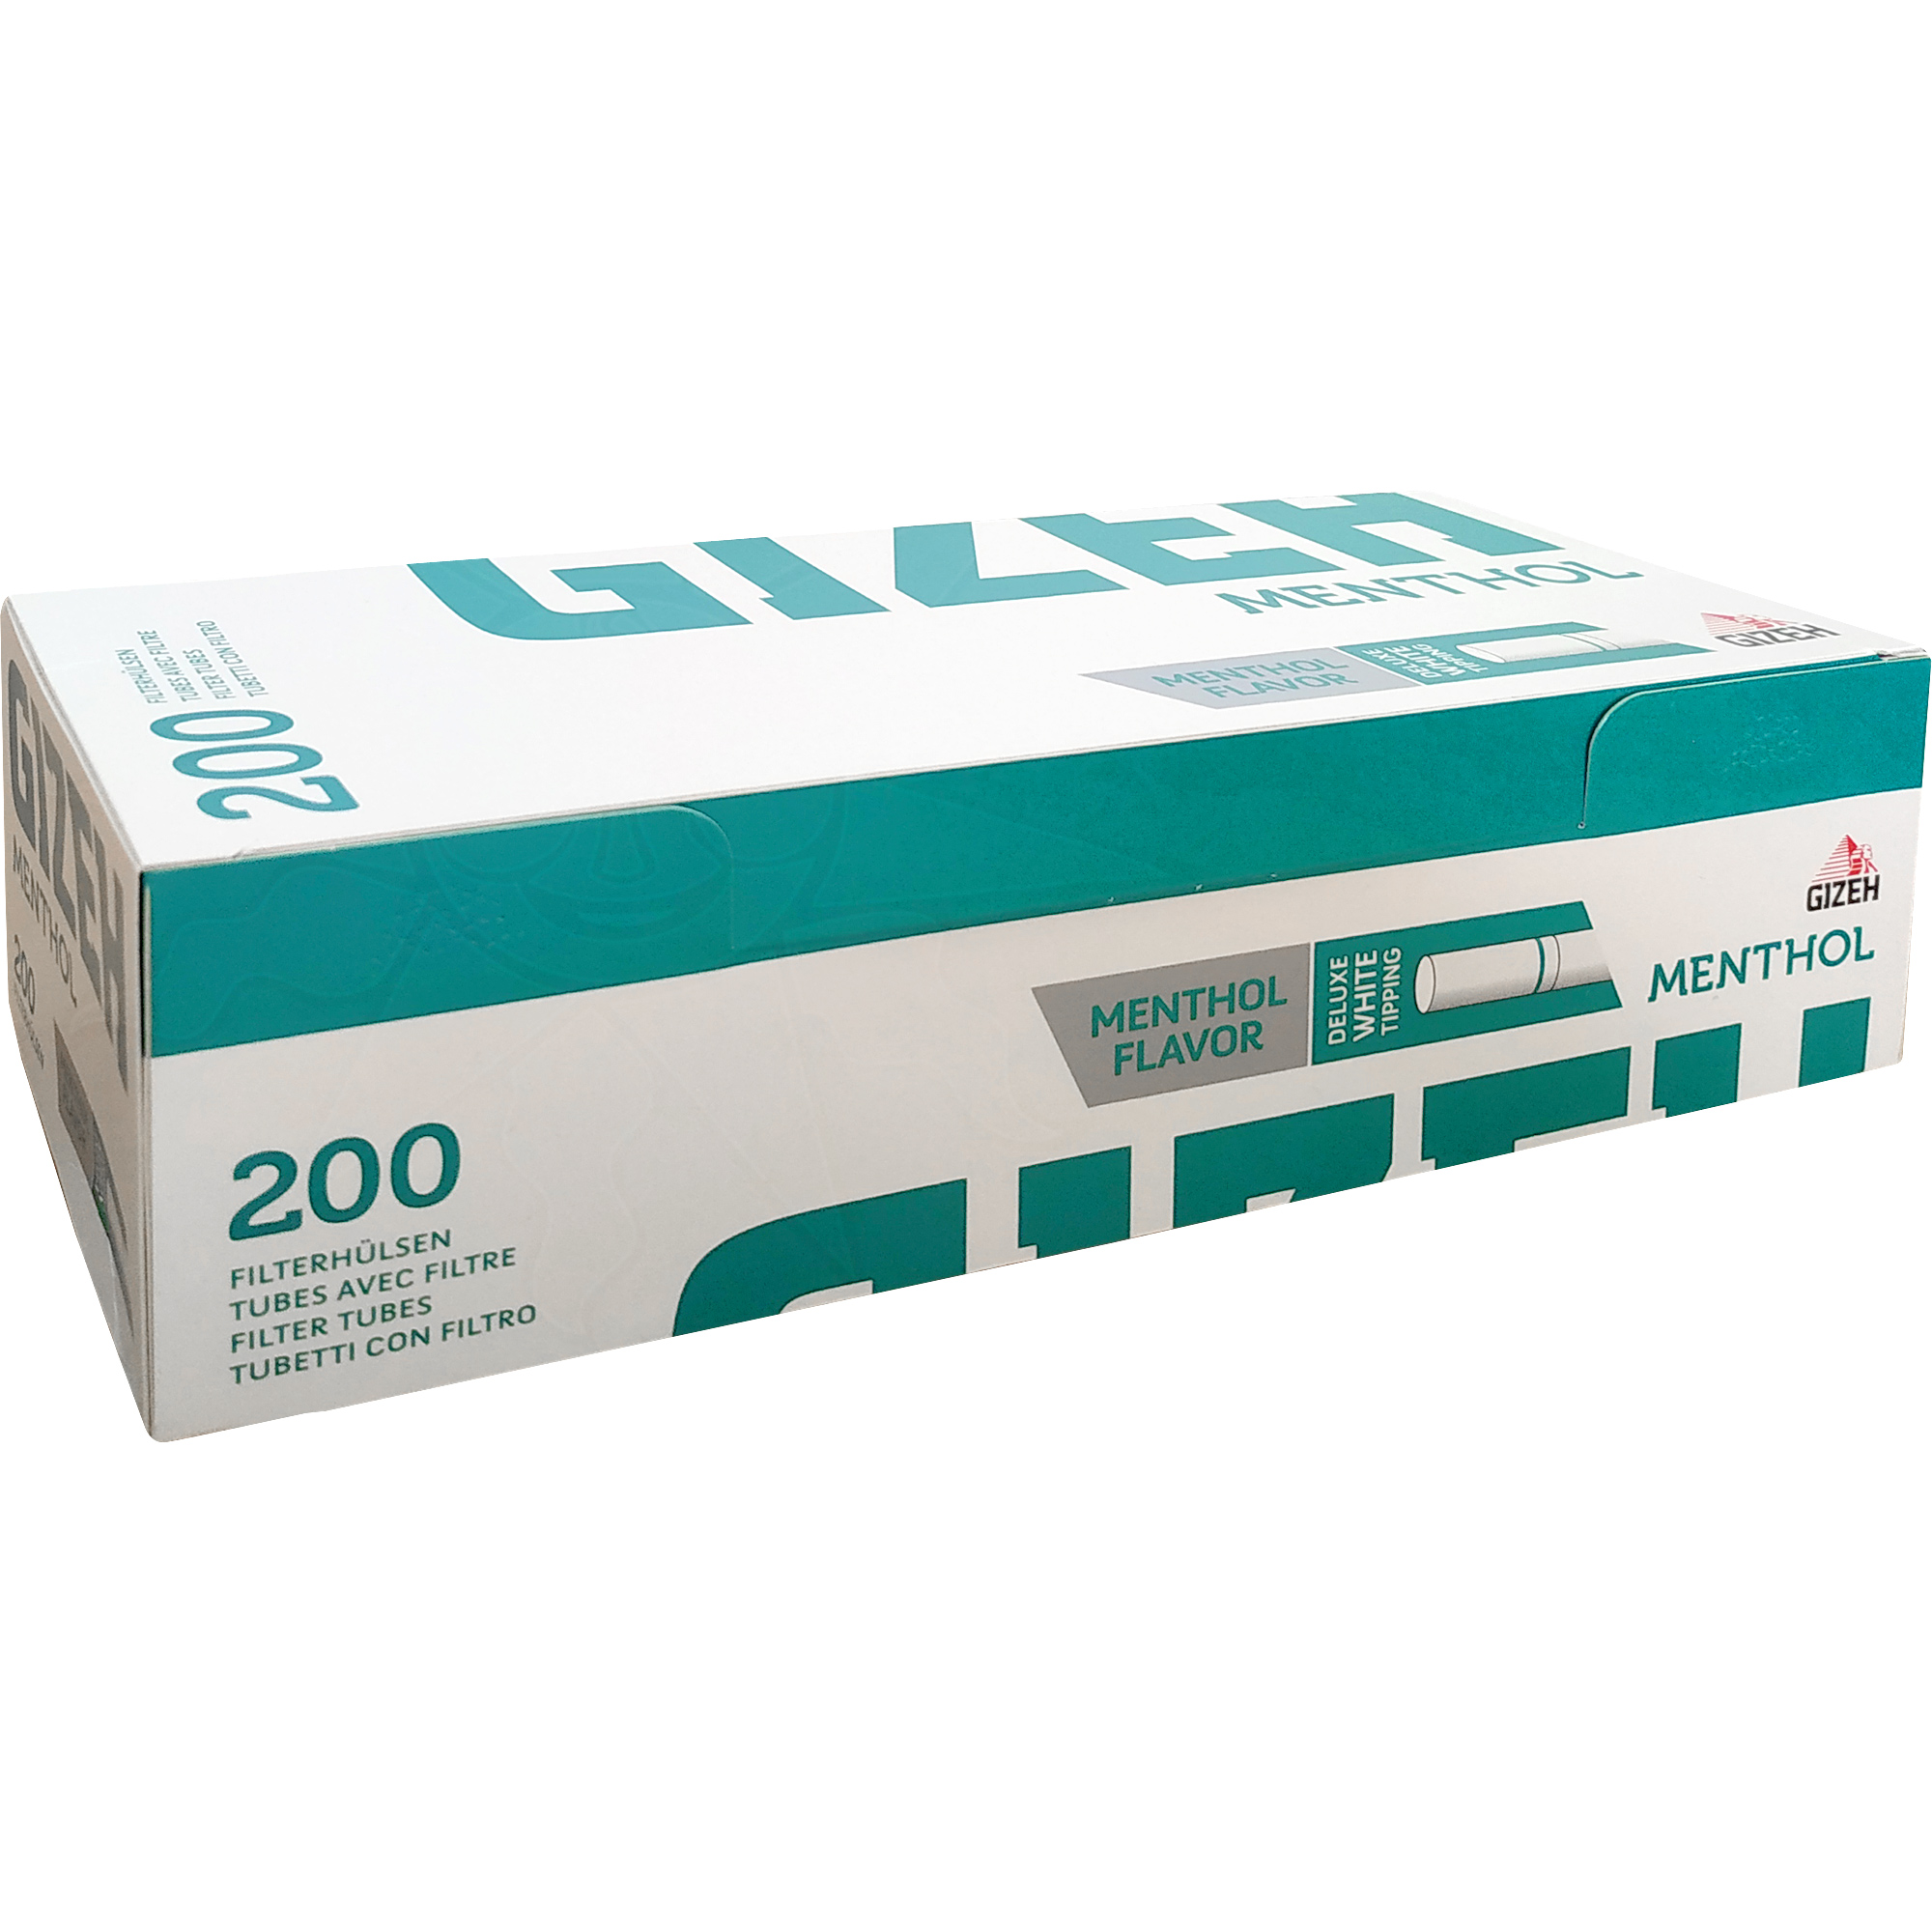 Filterhülsen Menthol (200 Filter)